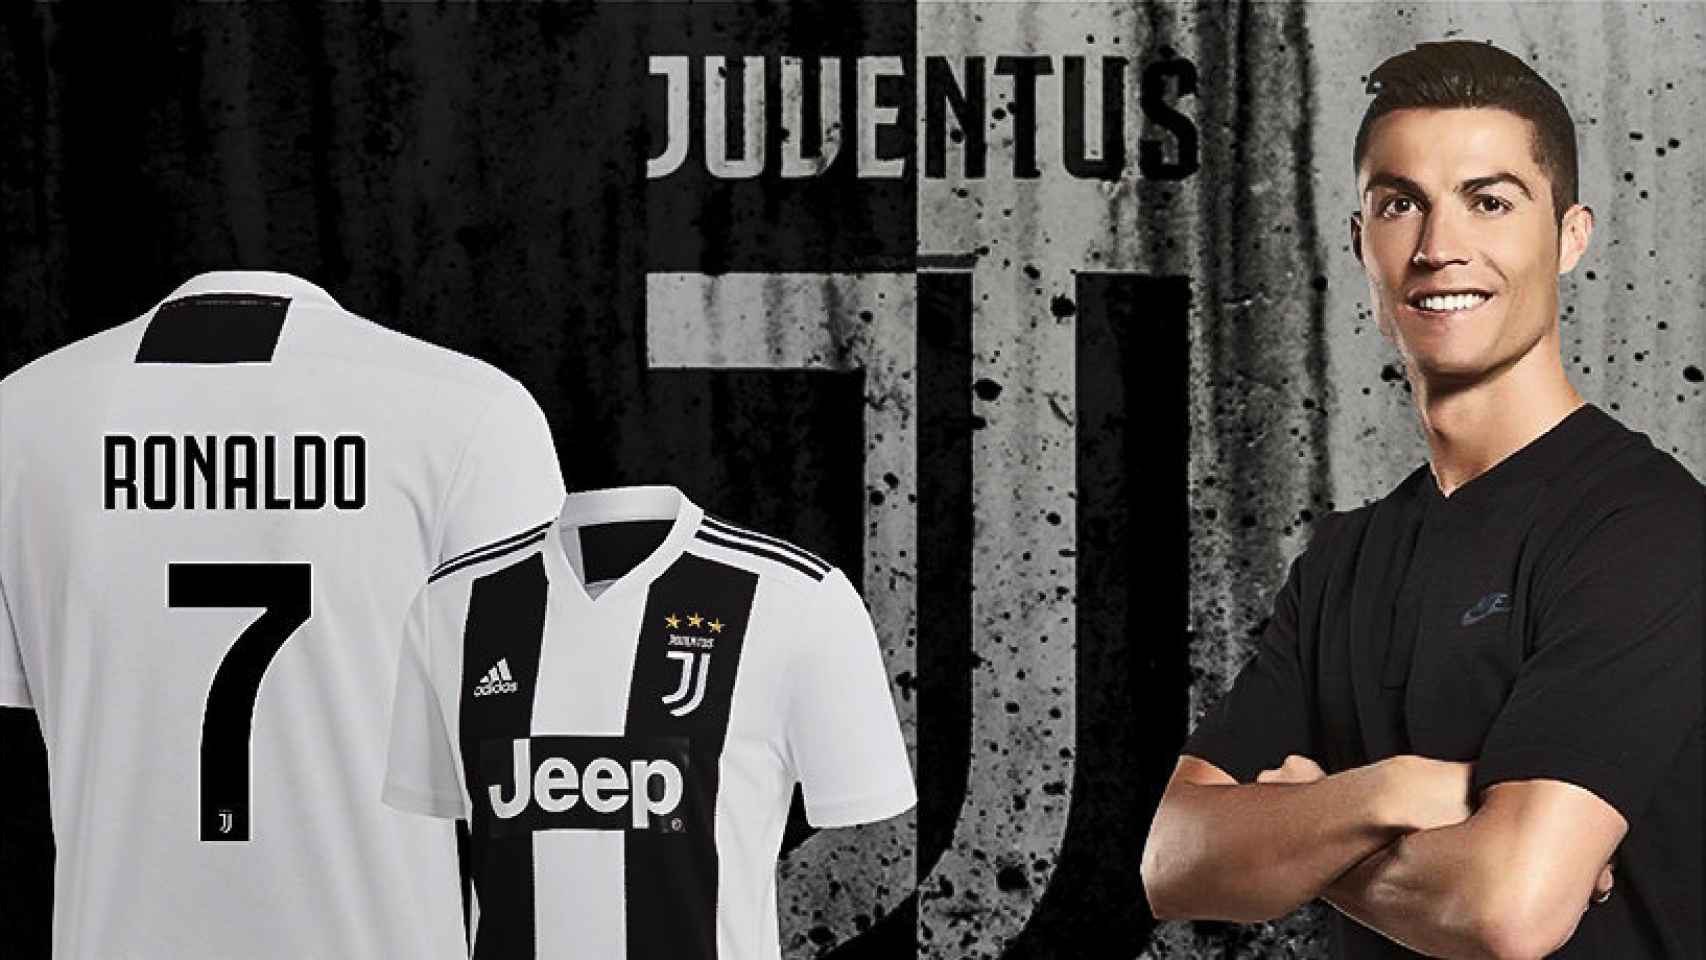 Cristiano ficha por la Juventus tras nueve años en el Madrid